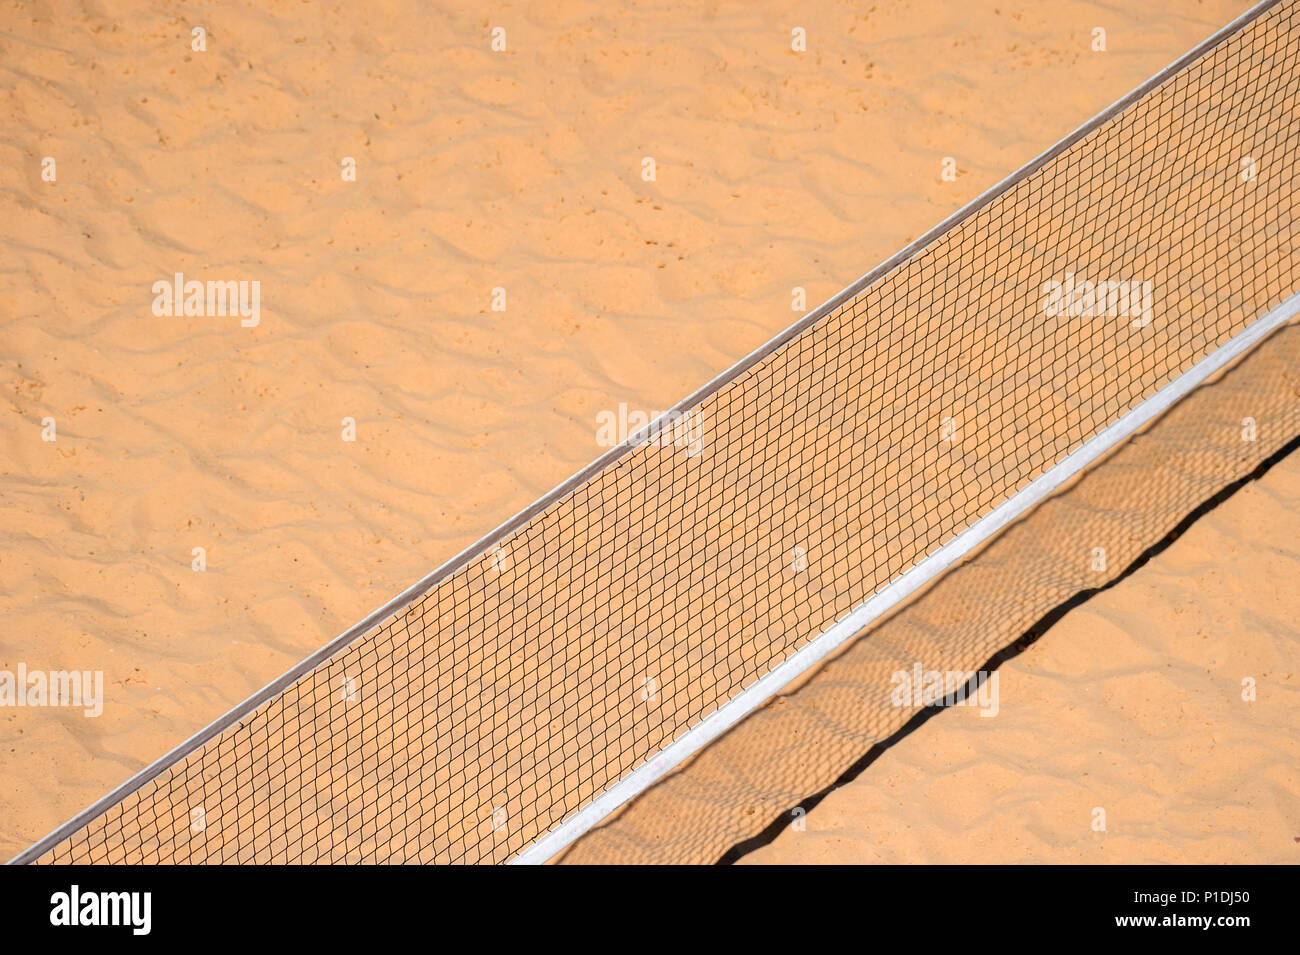 Pole immagine aerea di un campo da beach volley. Include una prospettiva di overhead di rete e texture di sabbia Foto Stock